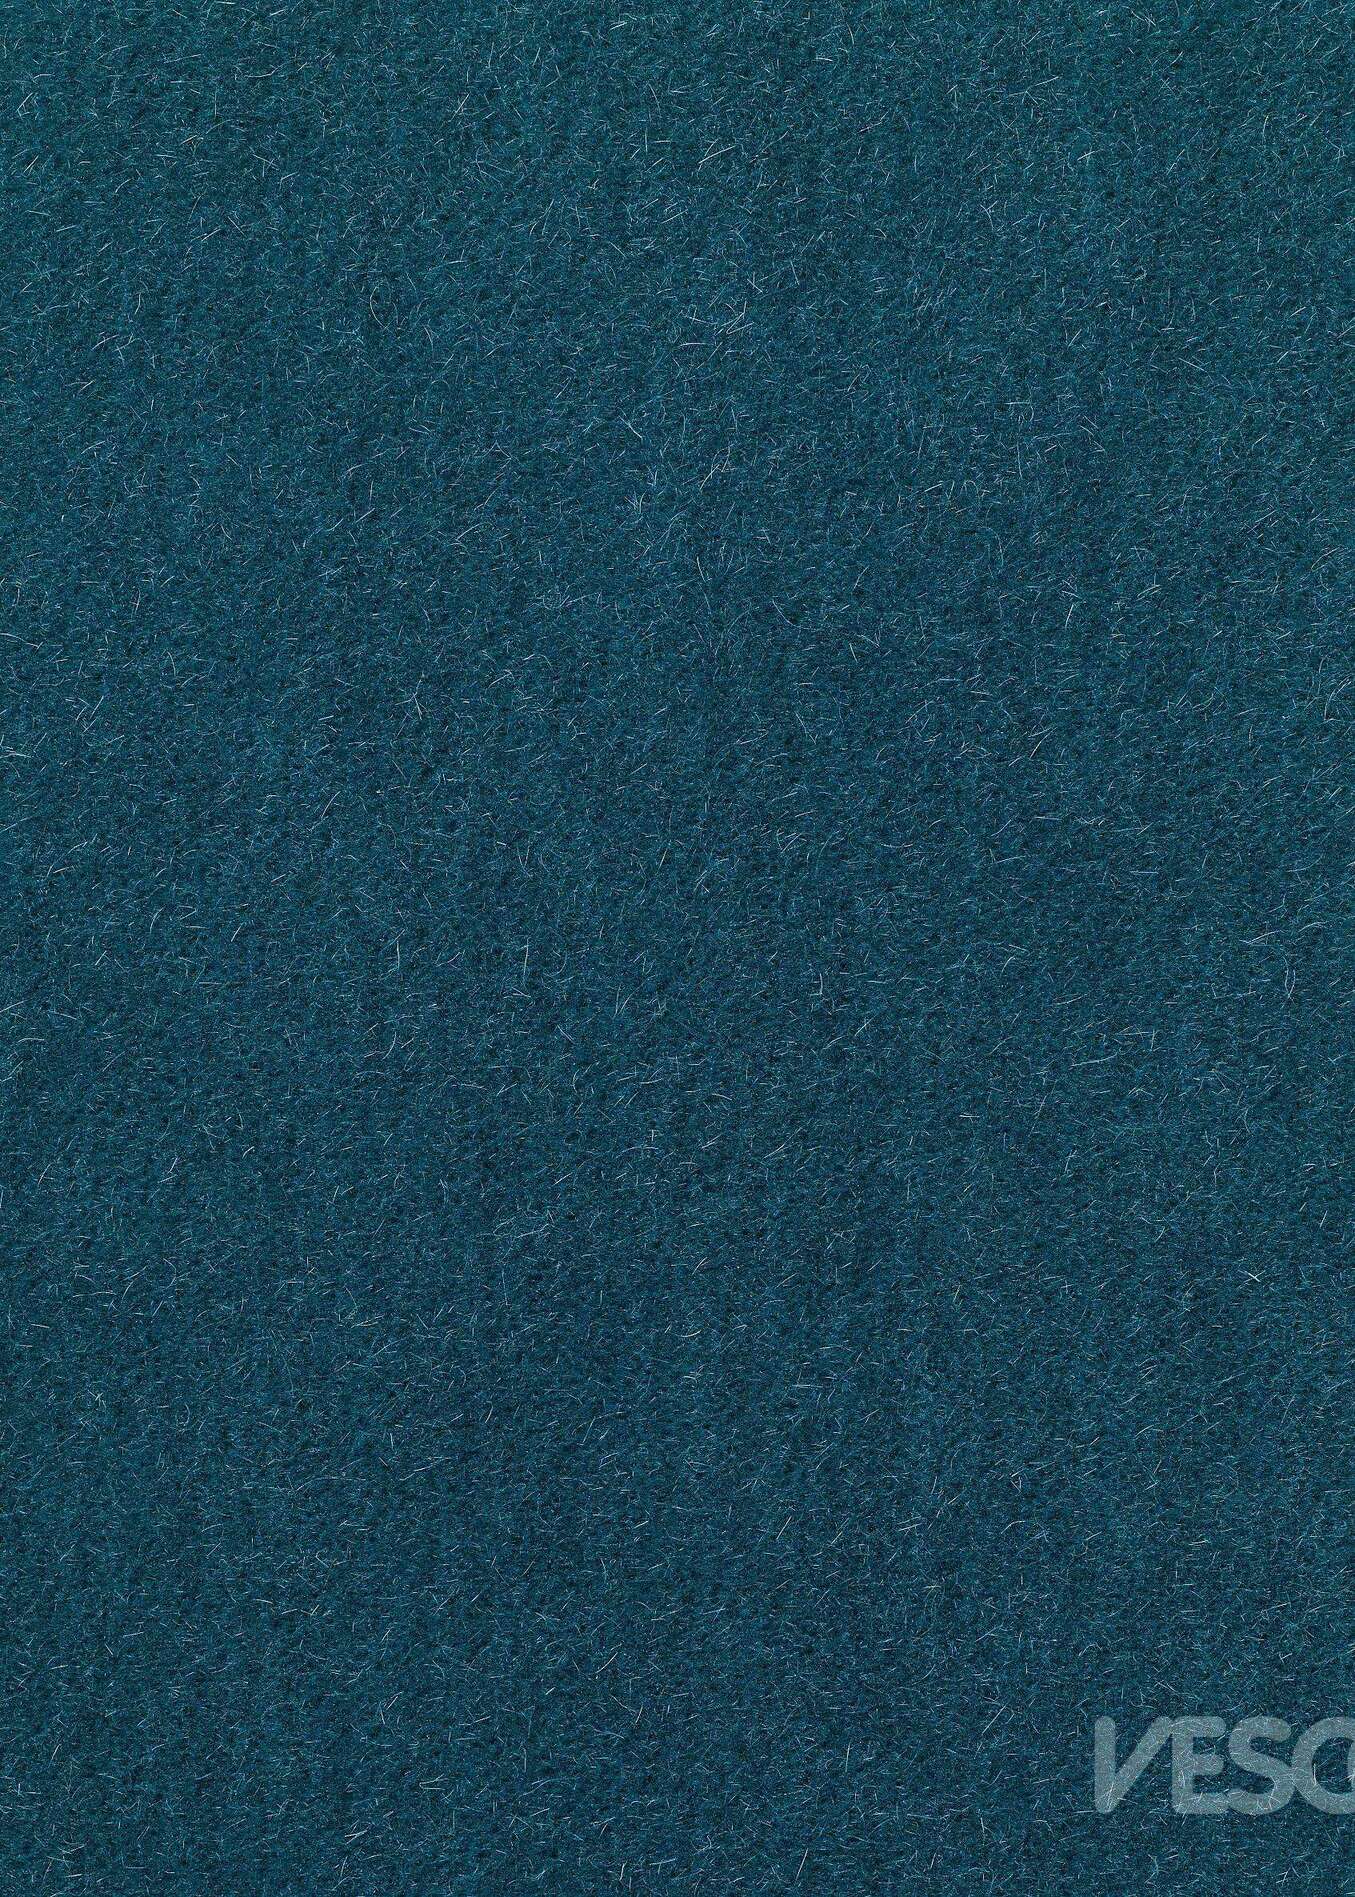 Vescom Zanzibar Upholstery Fabric 7059.24